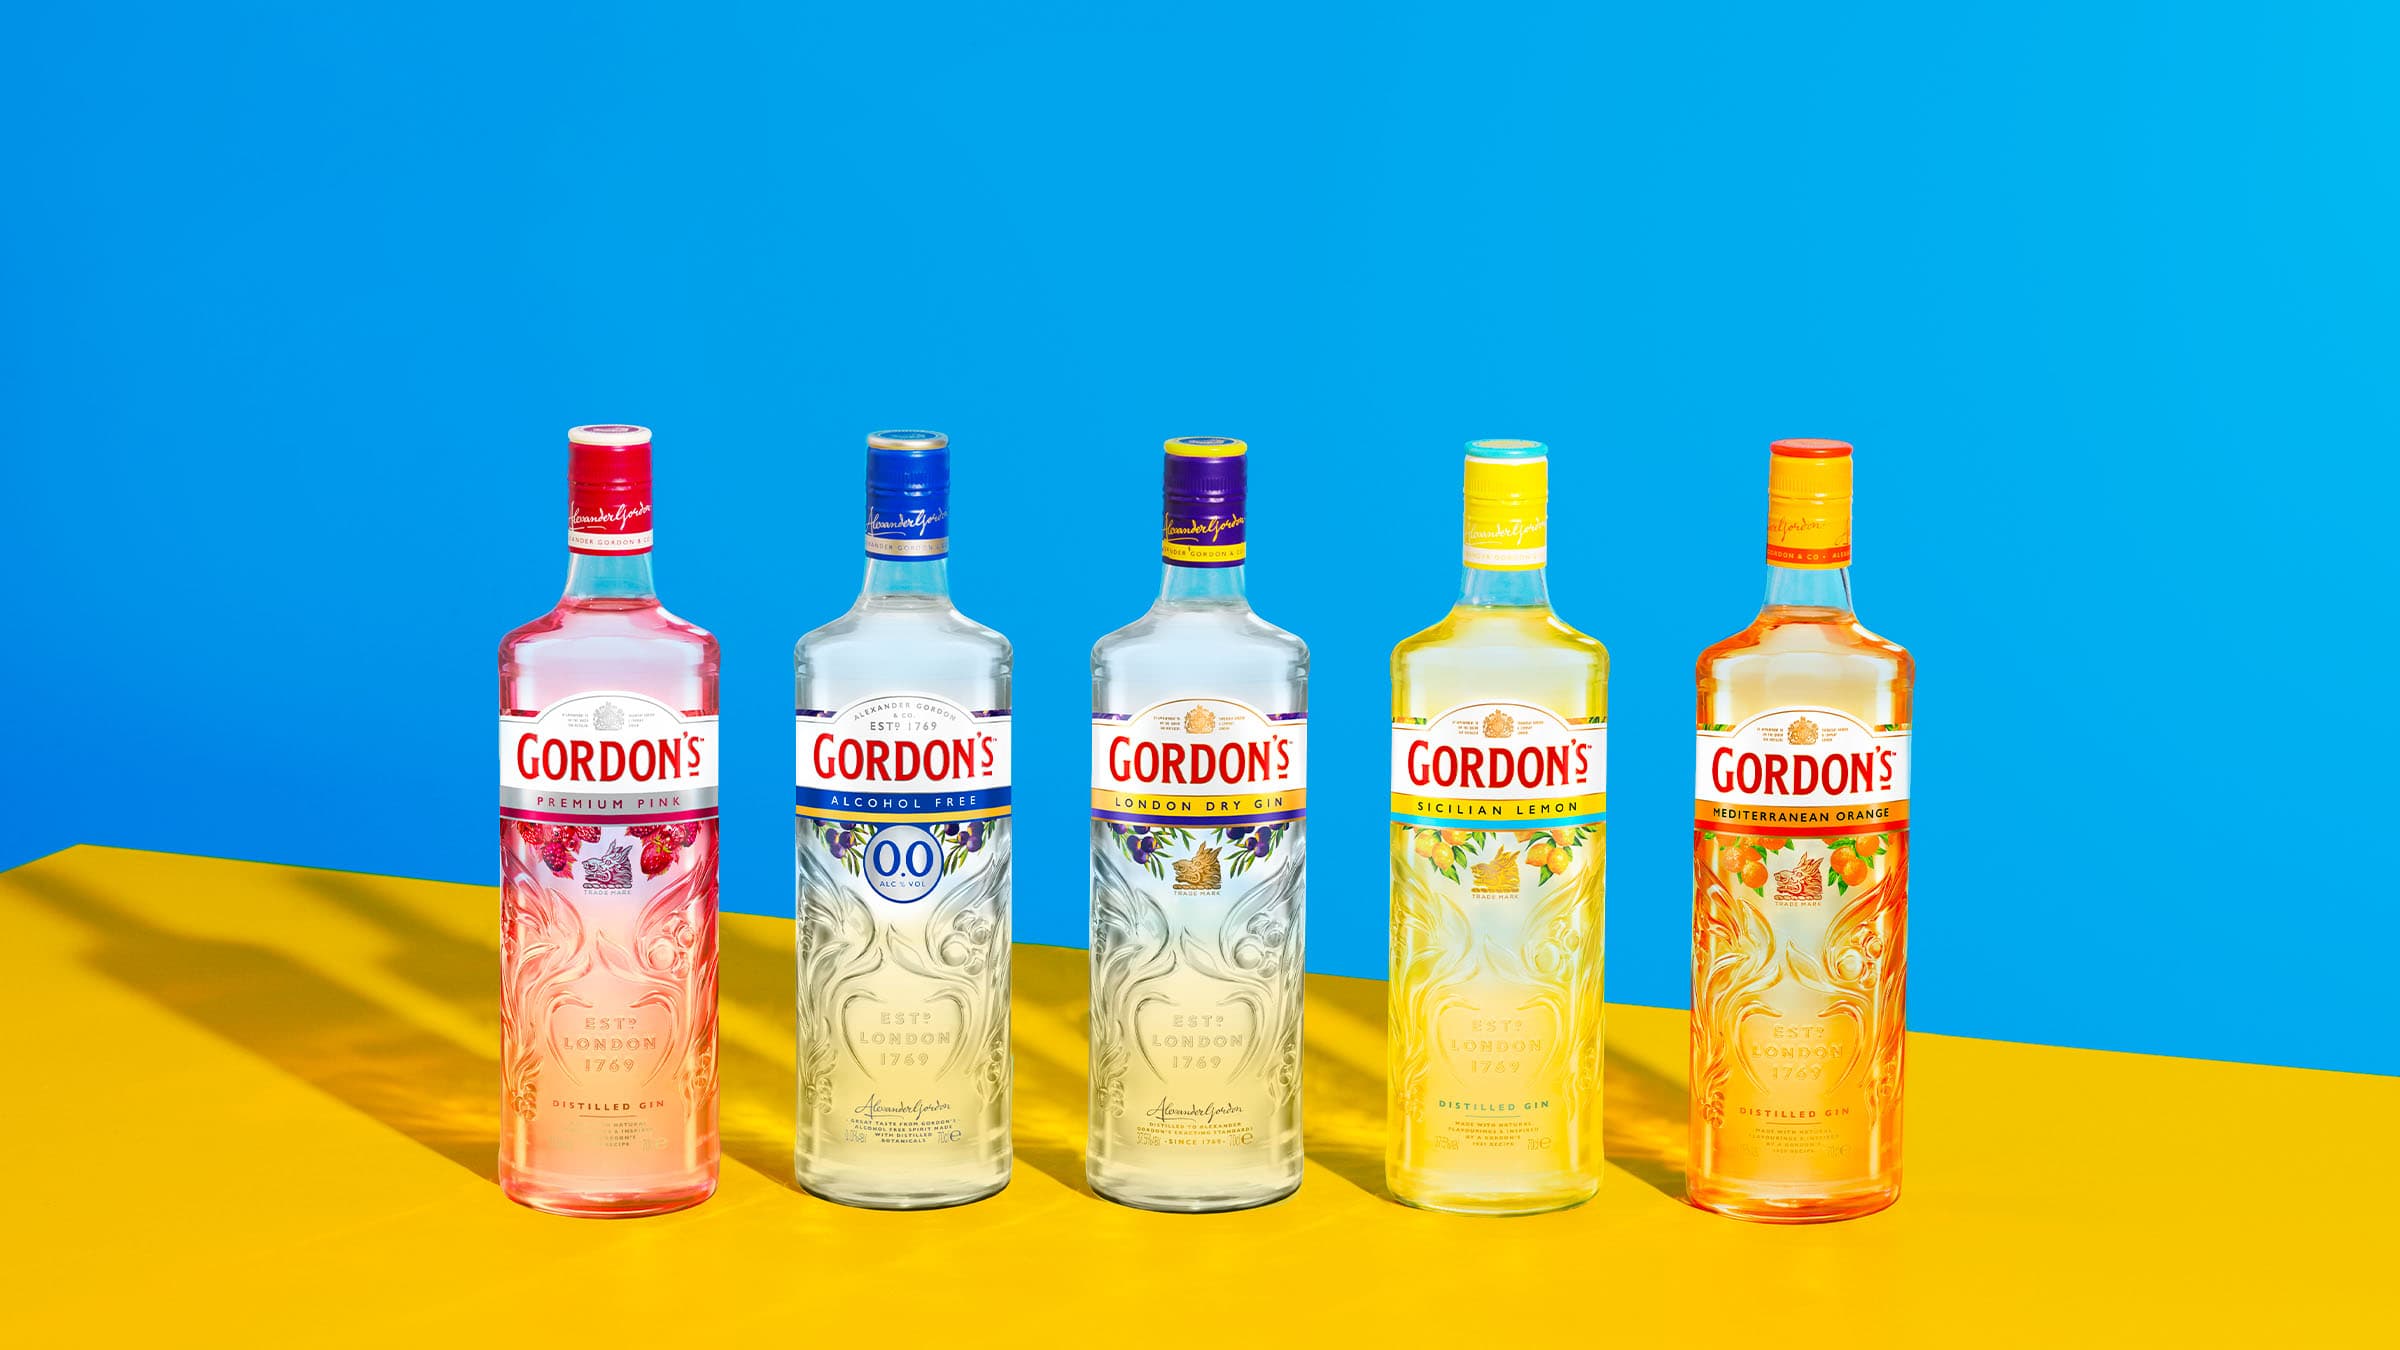 Cinco garrafas de diversas variações de gin Gordon's em um fundo azul e amarelo brilhante